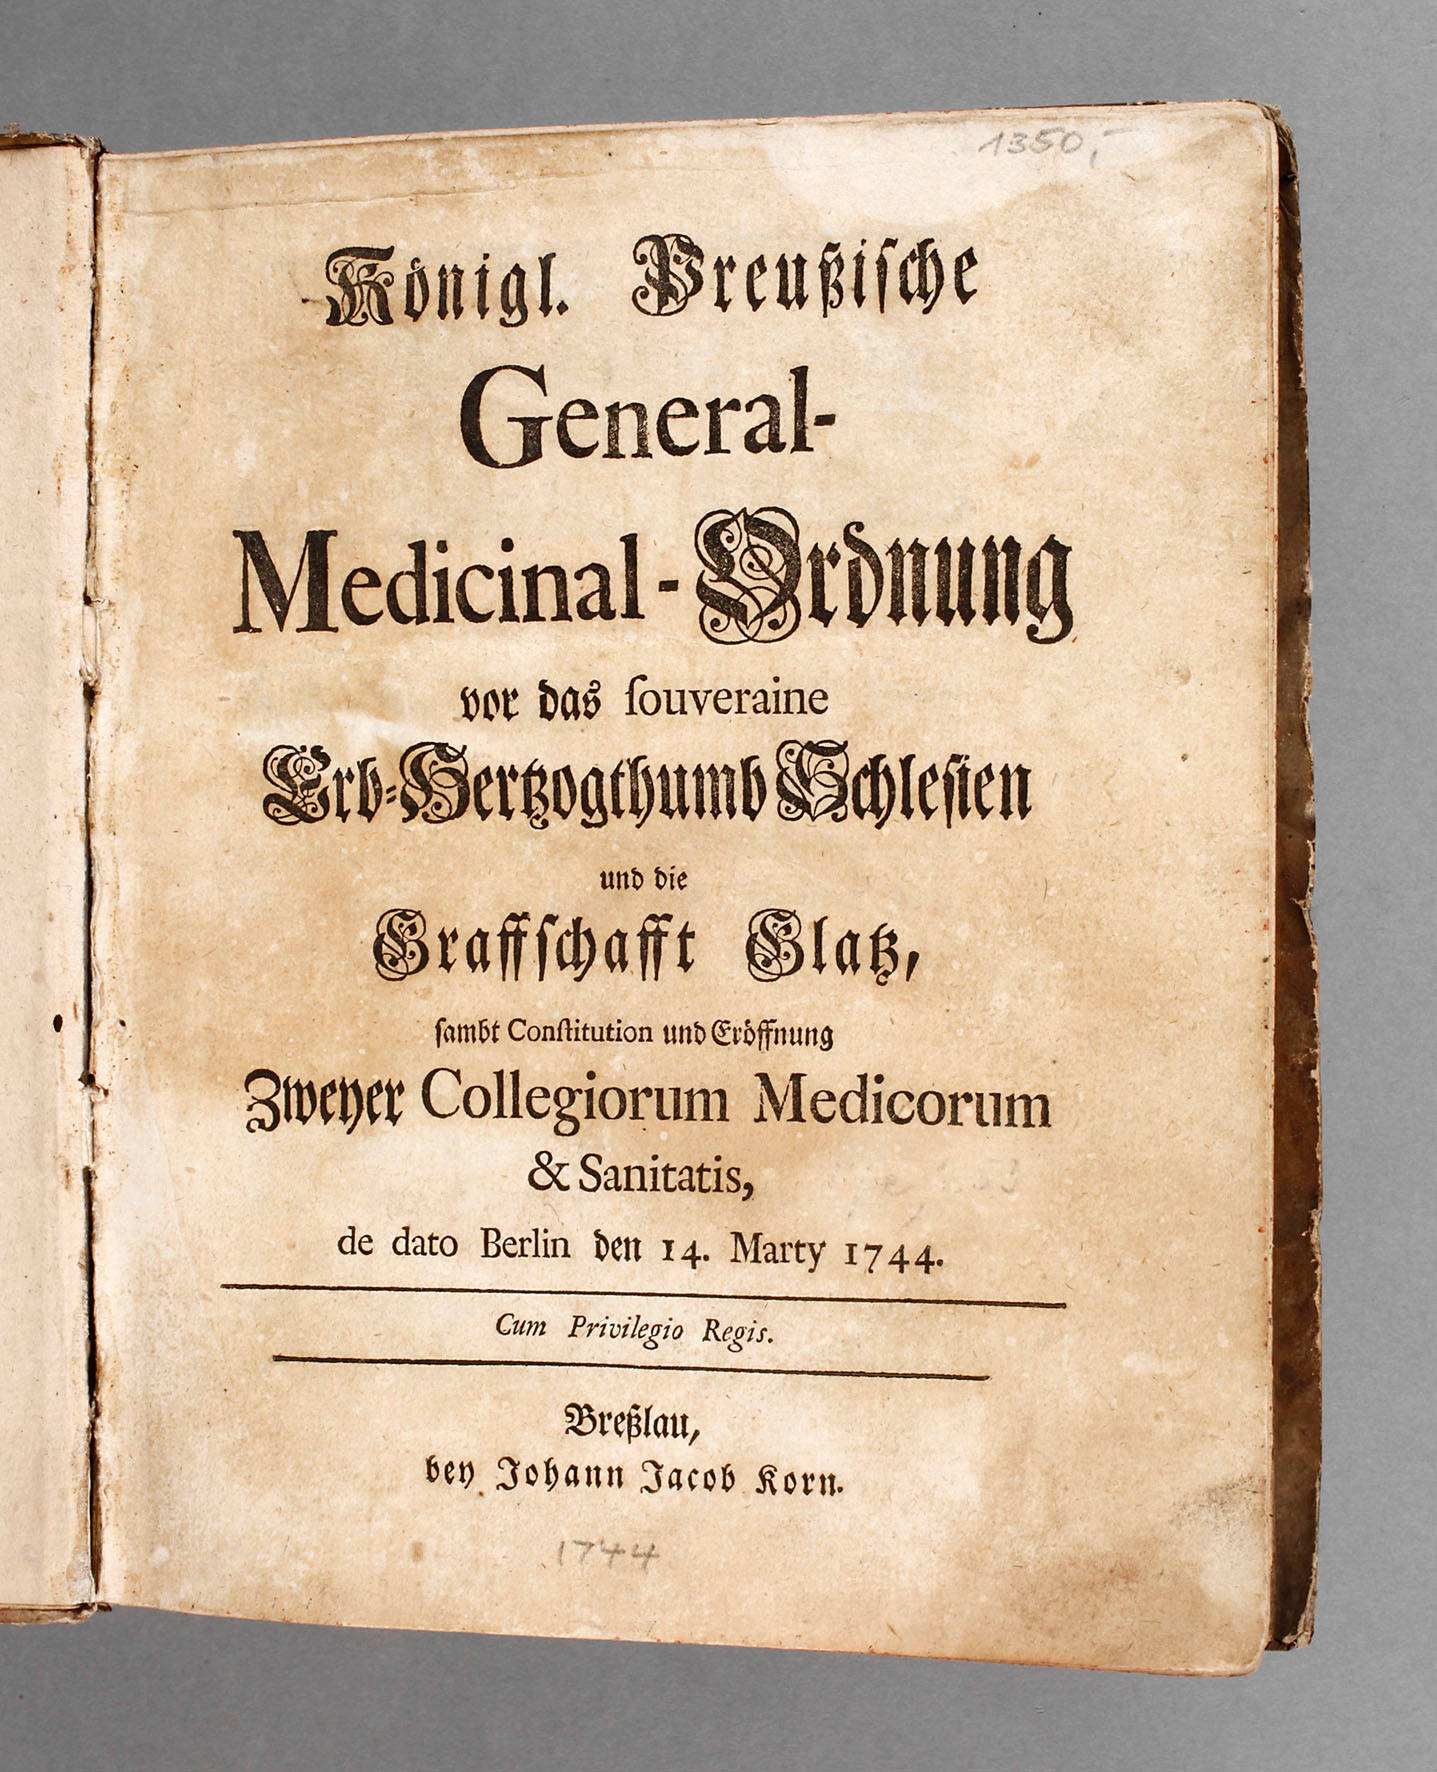 General-Medizinal-Verordnung für Schlesien 1744